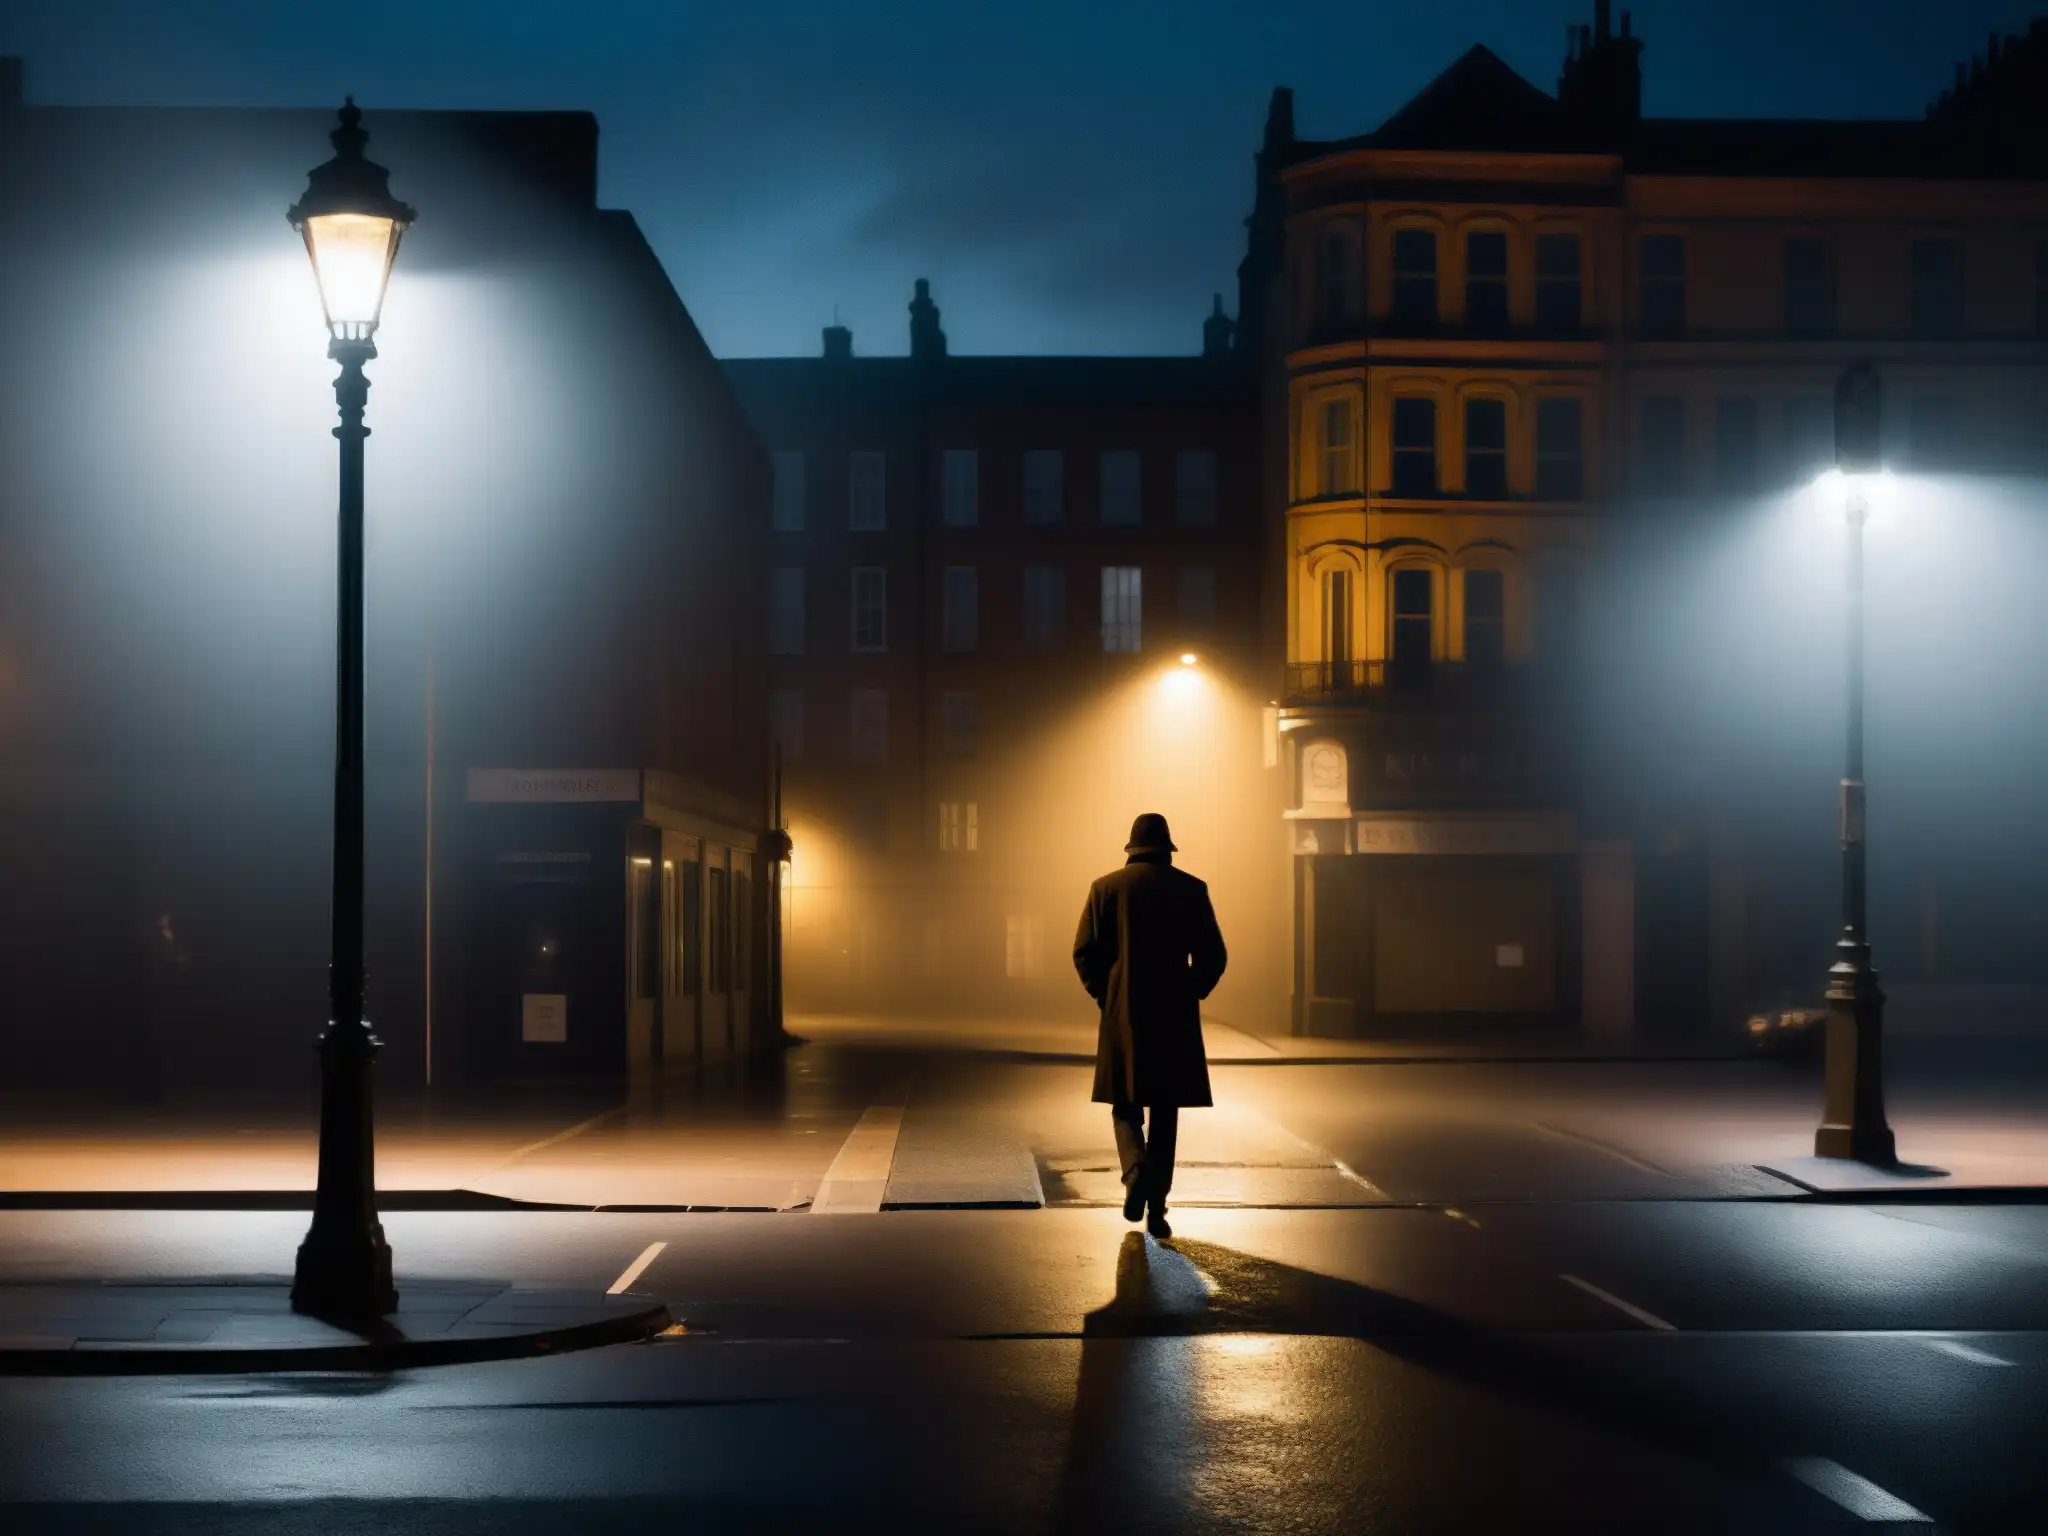 Persona solitaria camina en la esquina sombría de la calle, proyectando largas sombras bajo la luz titilante